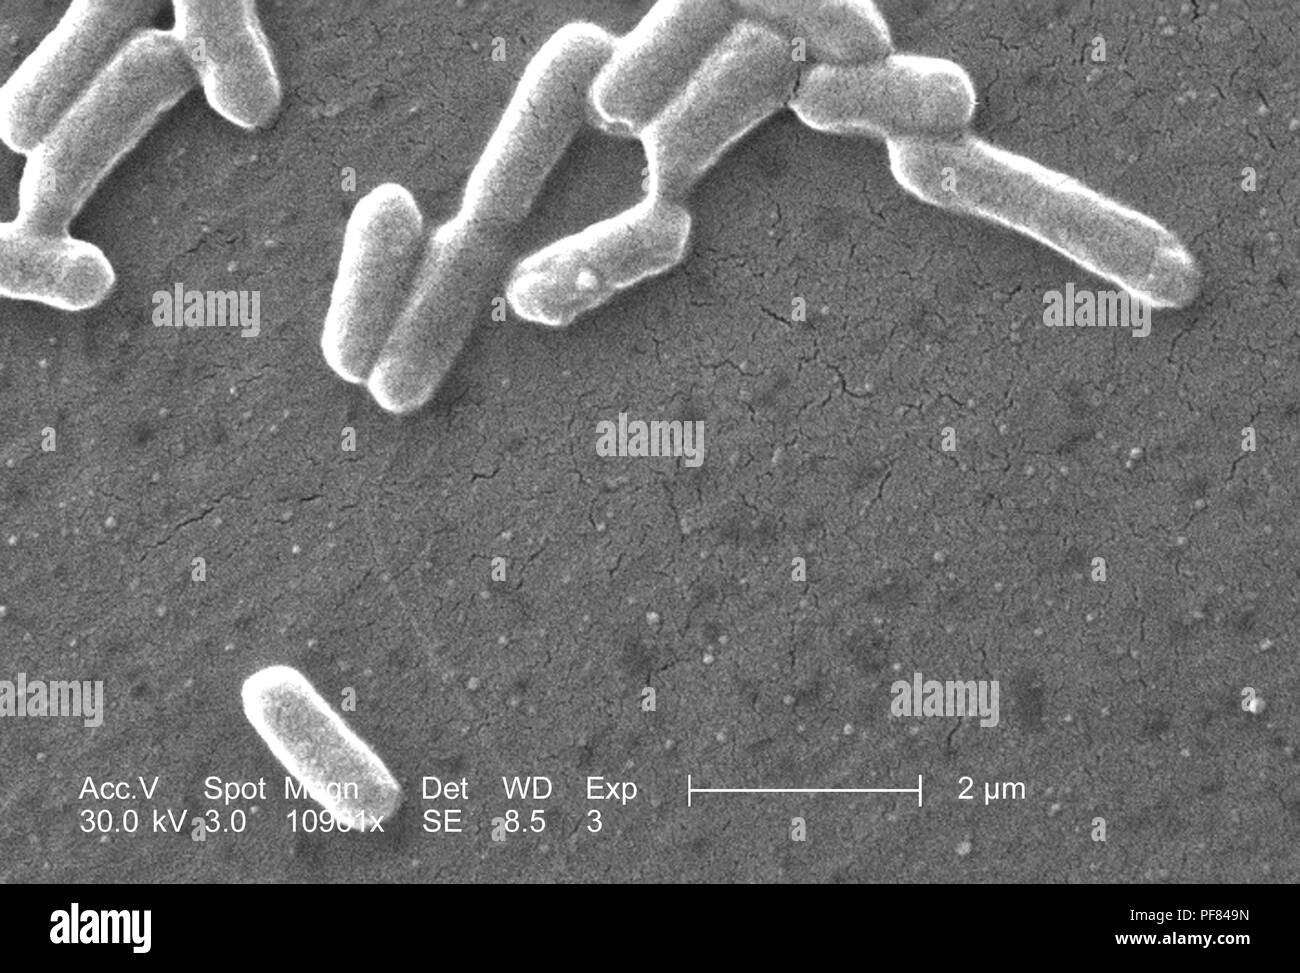 Gram-negativi Batteri Escherichia coli del ceppo O157:H7, ha rivelato nel 10961x scansione ingrandita al microscopio elettronico (SEM) immagine, 2006. Immagine cortesia di centri per il controllo delle malattie (CDC) / Nazionale Escherichia, Shigella, Vibrio unità di riferimento presso la CDC. () Foto Stock